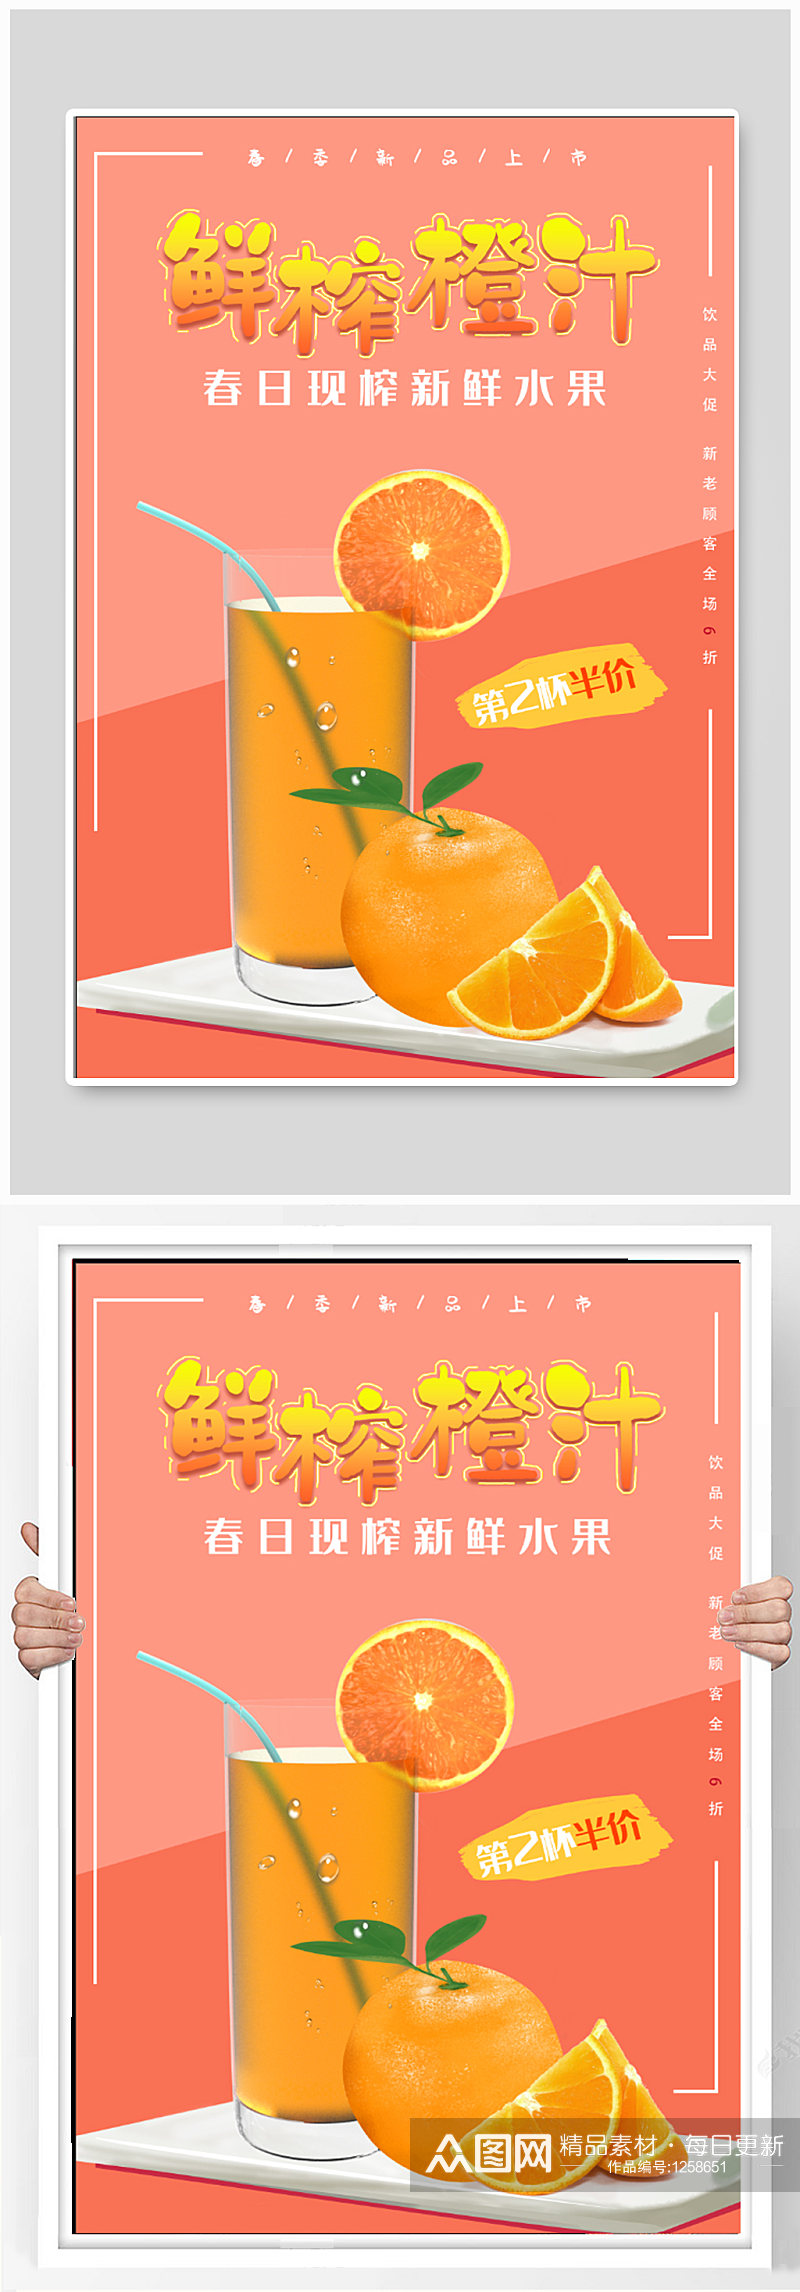 鲜榨橙汁饮品店海报素材